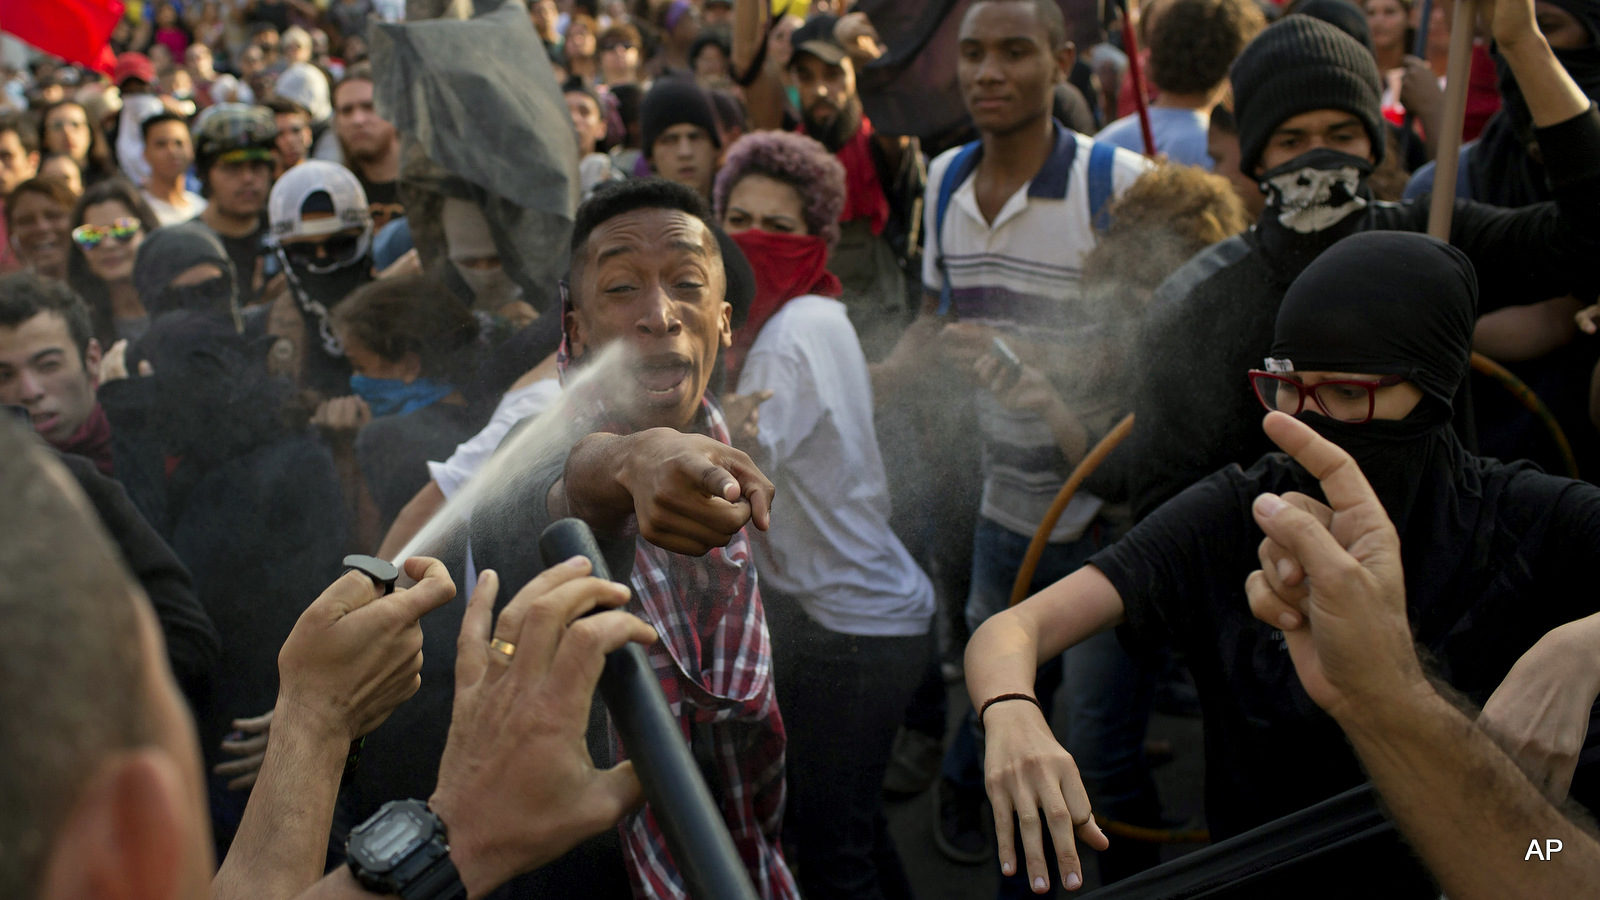 Brazil police officer pepper sprays demonstrators